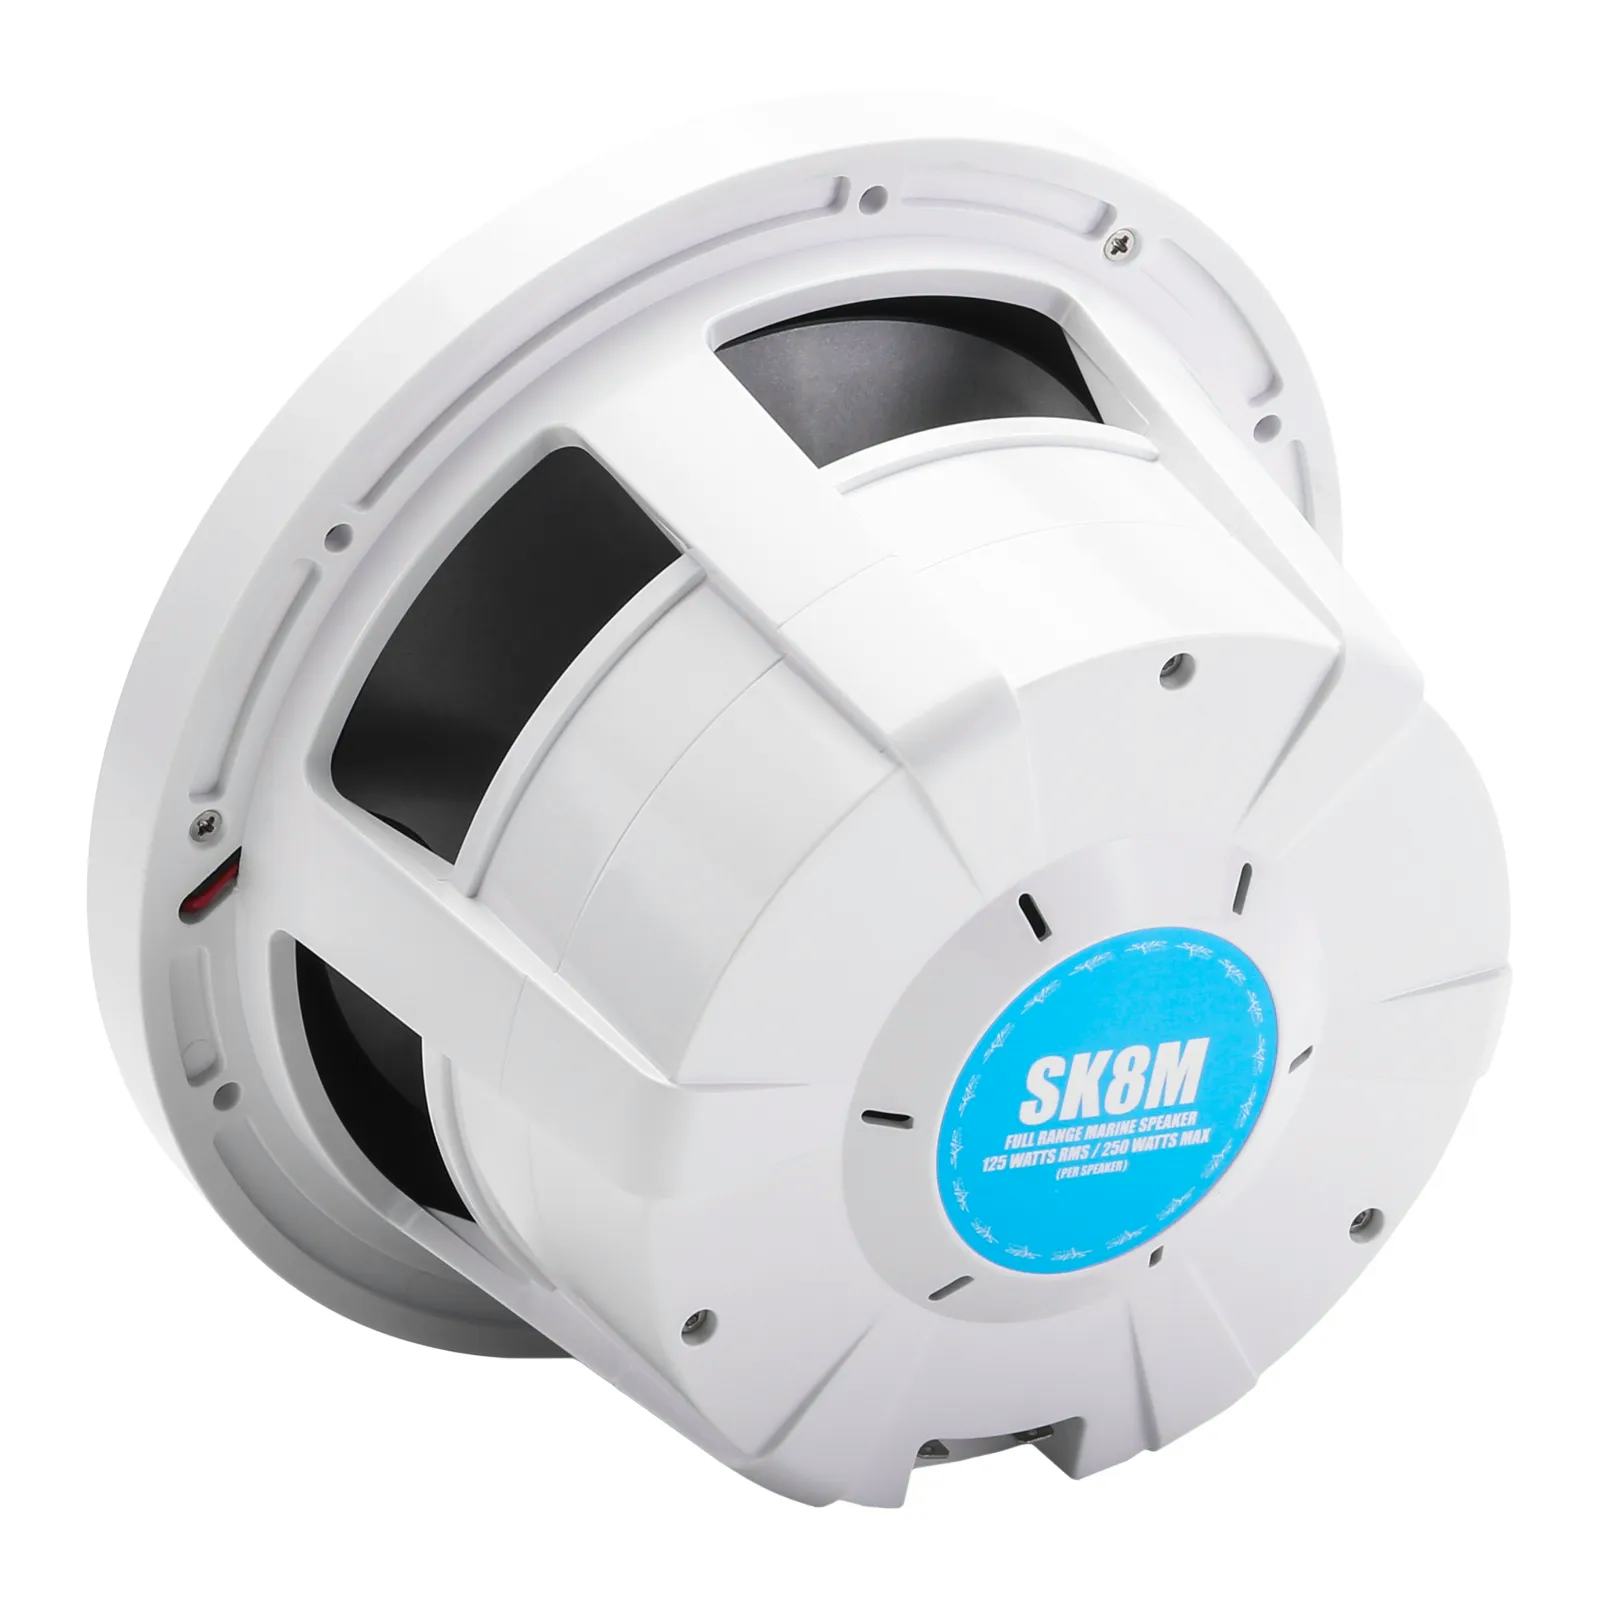 SK8M | Marine 8" Full Range 2-Way 500 Watt Speakers - White (Pair) #4